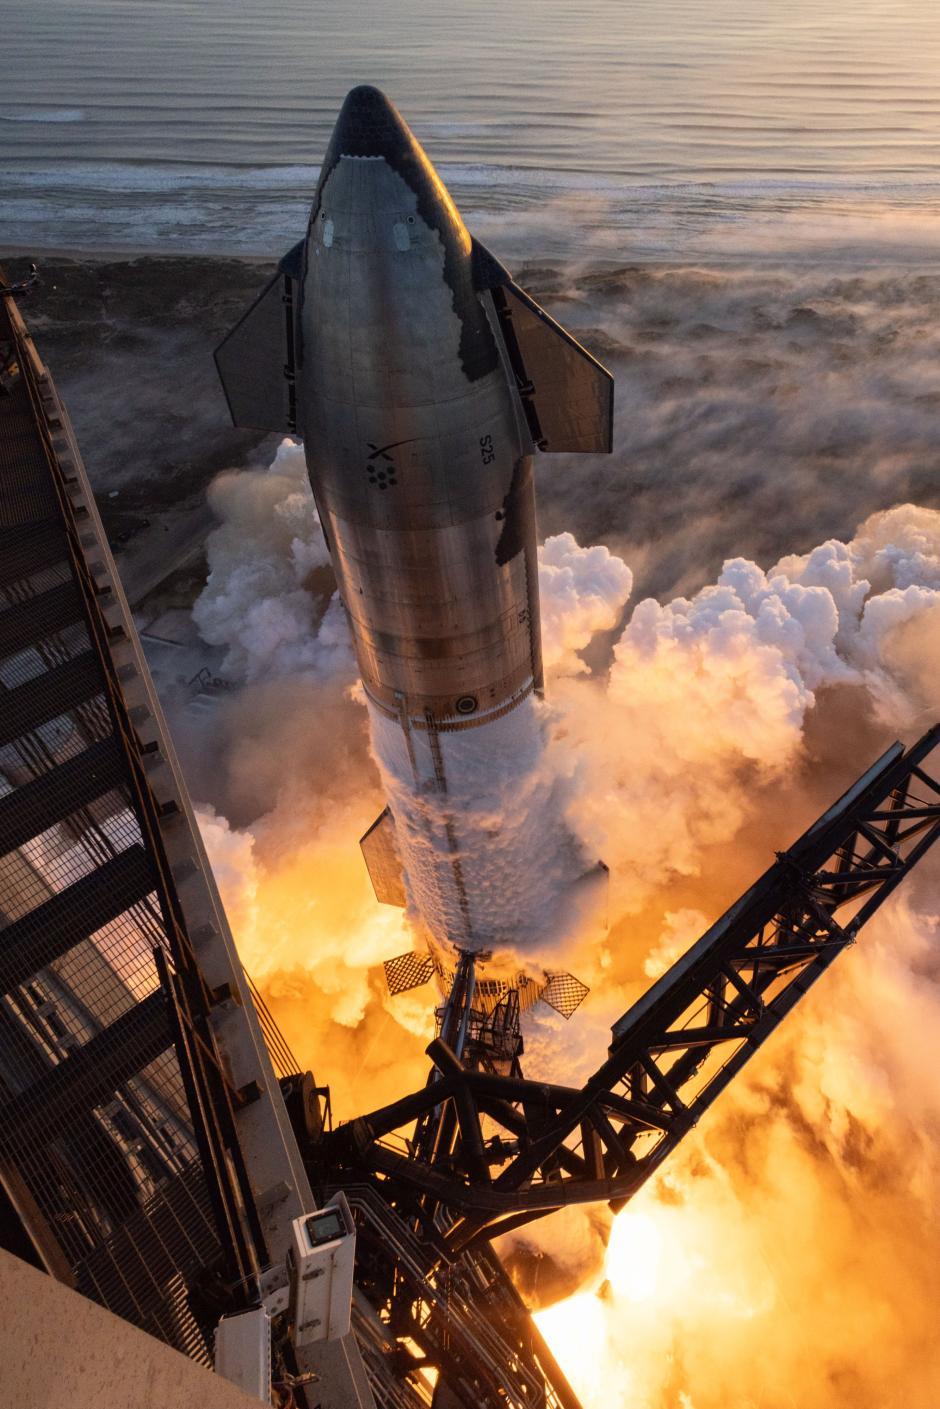 El megacohete Starship, de SpaceX, segundos antes de comenzar su segundo vuelo de prueba, el 18 de noviembre.  La NASA quiere emplear esta nave para llevar astronautas de vuelta a la Luna.